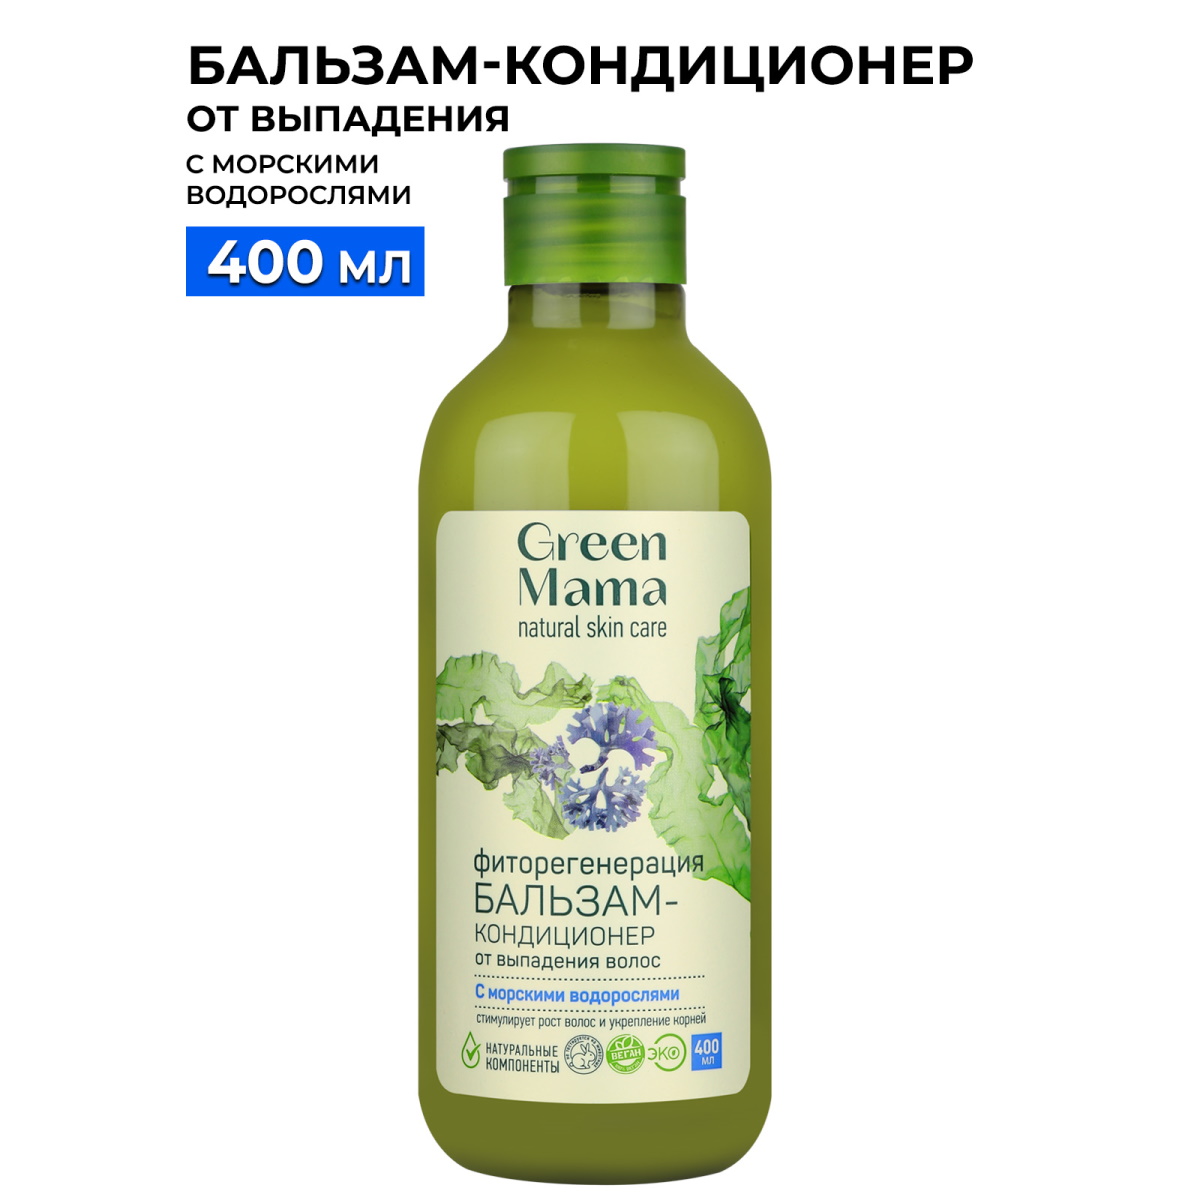 Бальзам для волос Green Mama фиторегенерация, 400 мл обертывание альганика водоросли ламинария и фукус банка 500мл